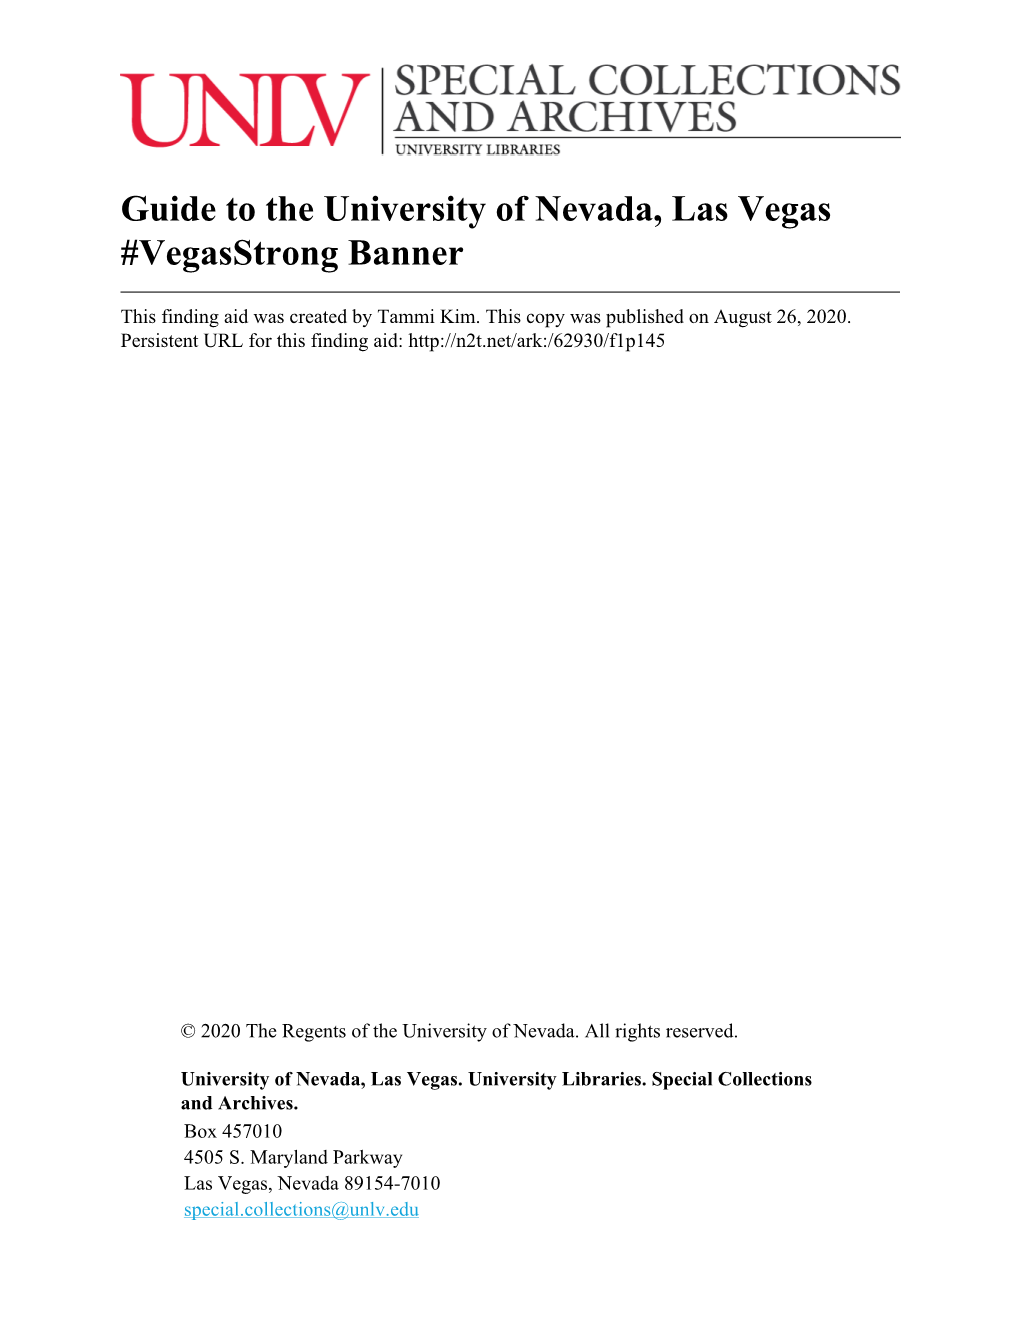 Guide to the University of Nevada, Las Vegas #Vegasstrong Banner